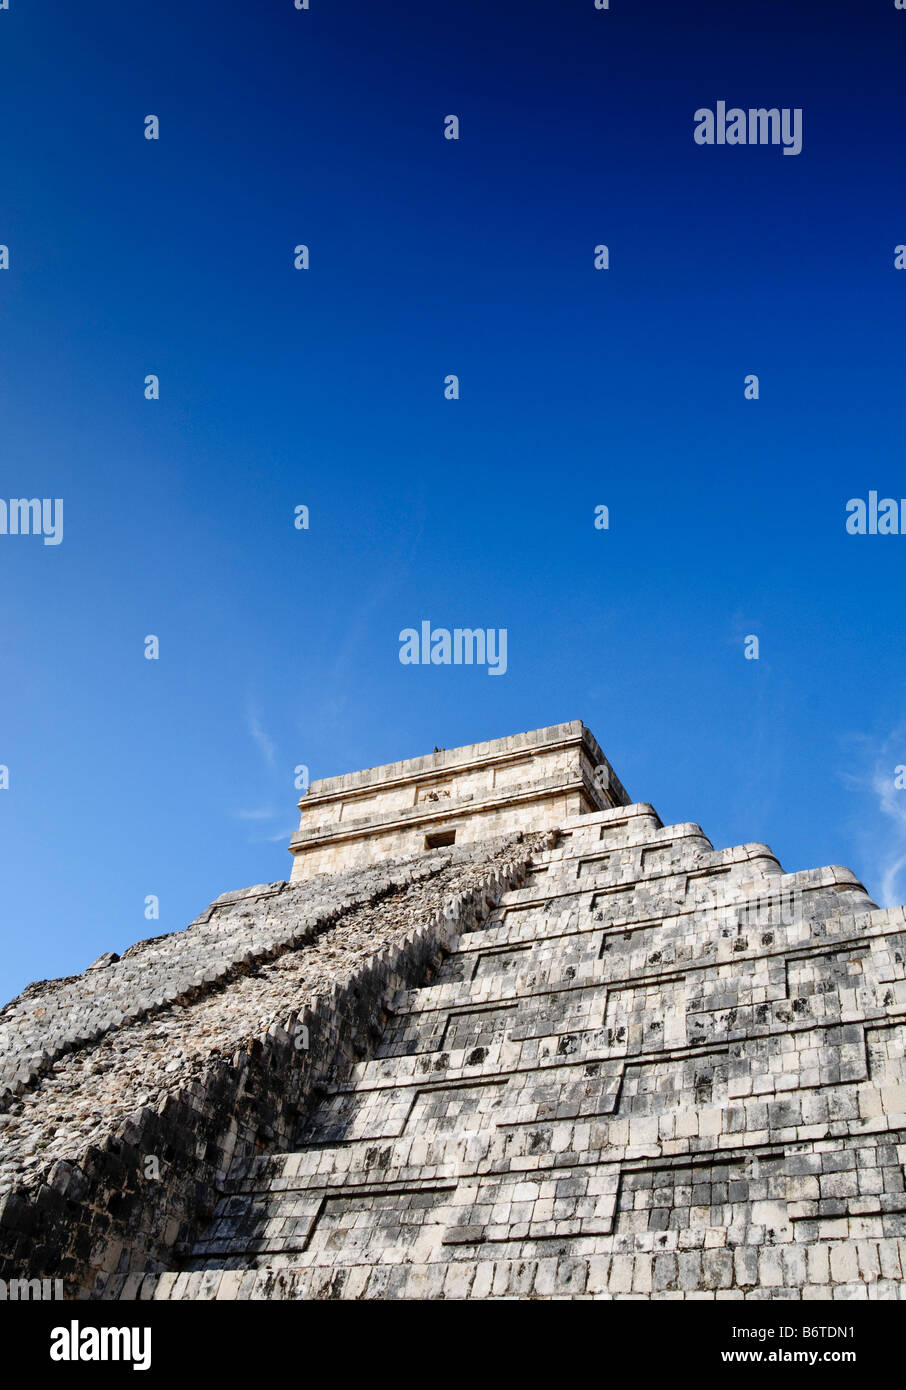 CHICHEN ITZA, Messico - El Castillo (noto anche come Tempio di Kuklcan) presso le antiche rovine Maya a Chichen Itza, Yucatan, Messico 081216103554_4555.NEF. Chichen Itza, situato sulla penisola dello Yucatan in Messico, è un importante sito archeologico che mostra la ricca storia e la conoscenza scientifica avanzata dell'antica civiltà Maya. E 'più noto per la Piramide Kukulkan, o 'El Castillo', una struttura a quattro lati con 91 gradini su ogni lato, che culmina in un singolo gradino in cima per rappresentare i 365 giorni dell'anno solare. Foto Stock